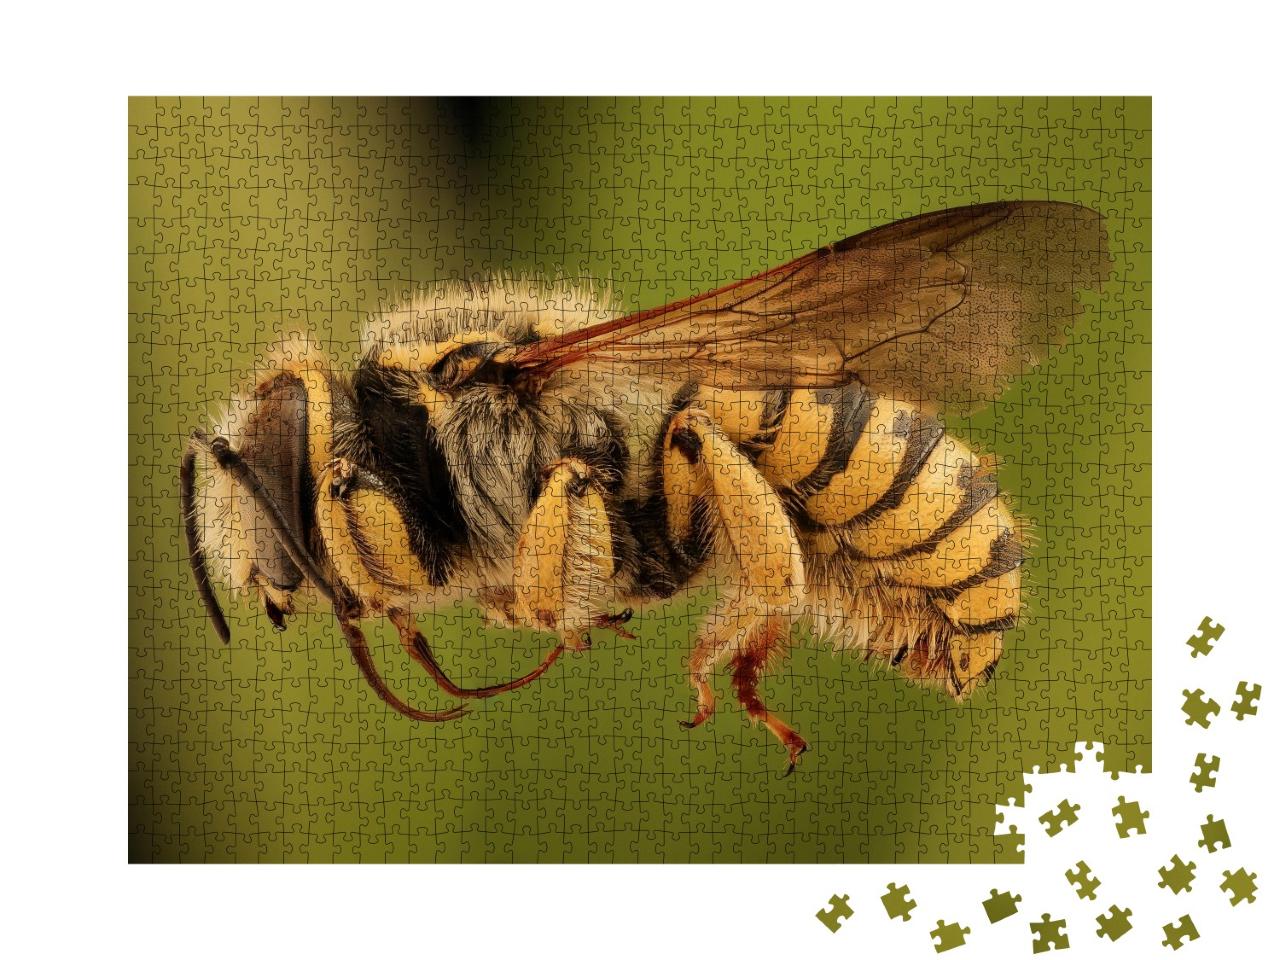 Puzzle de 1000 pièces « Une abeille volante »